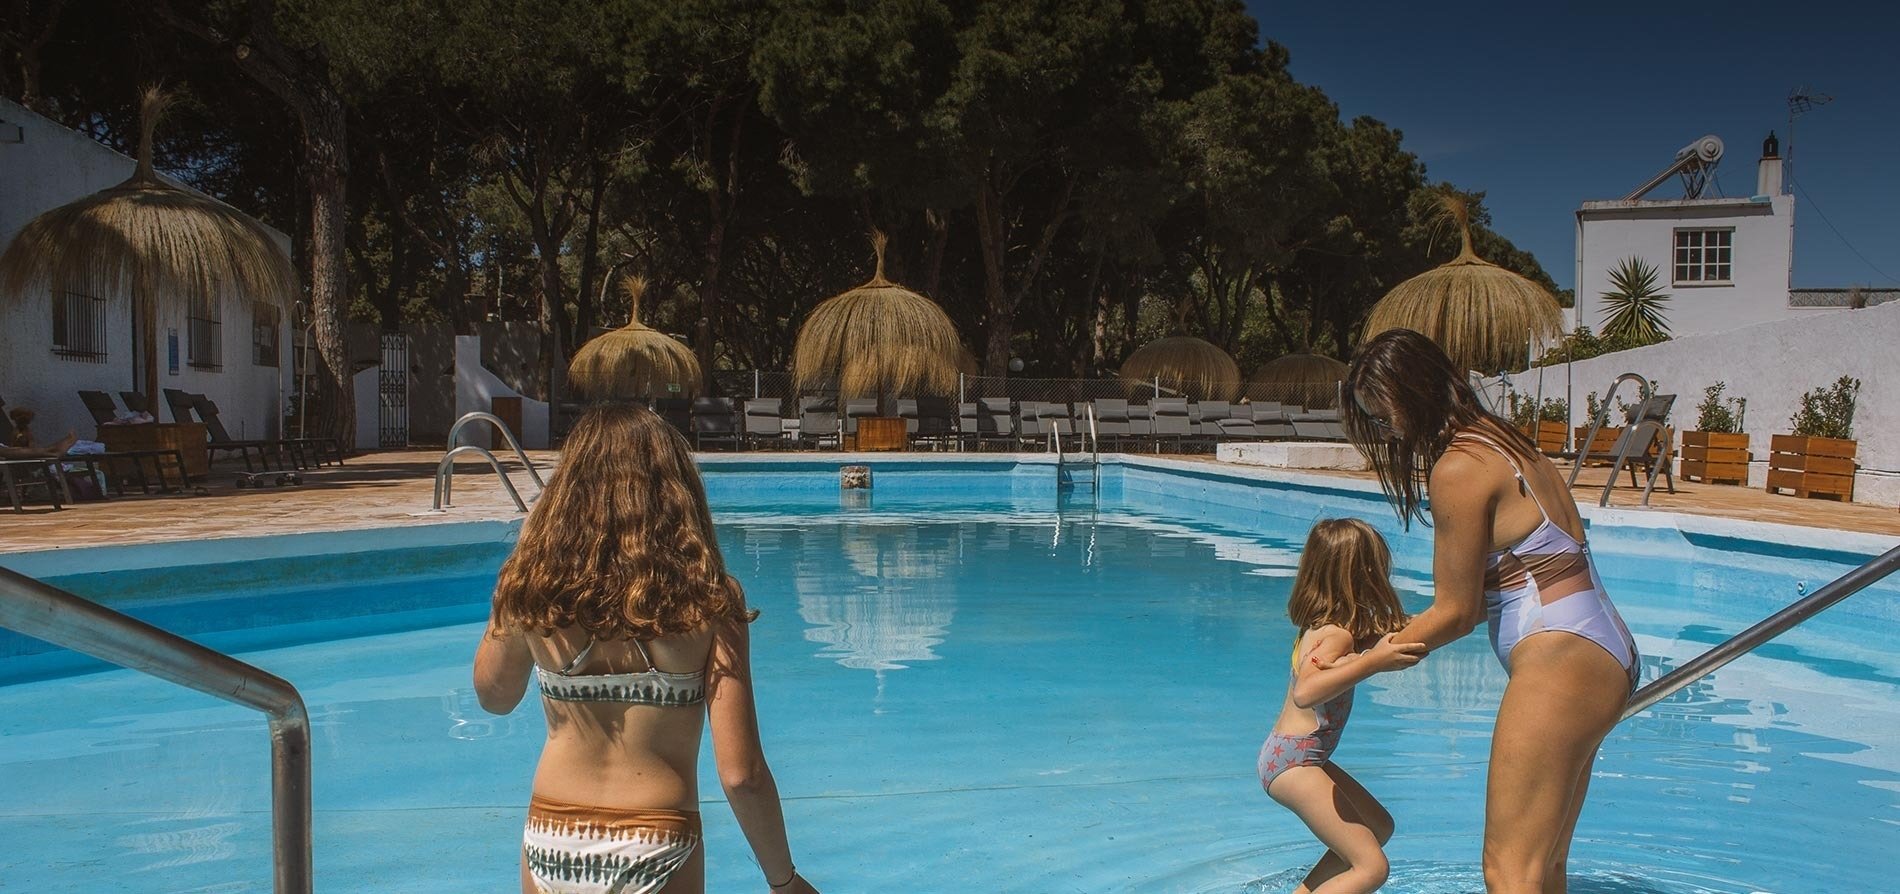 een vrouw en twee meisjes in bikini staan in een zwembad